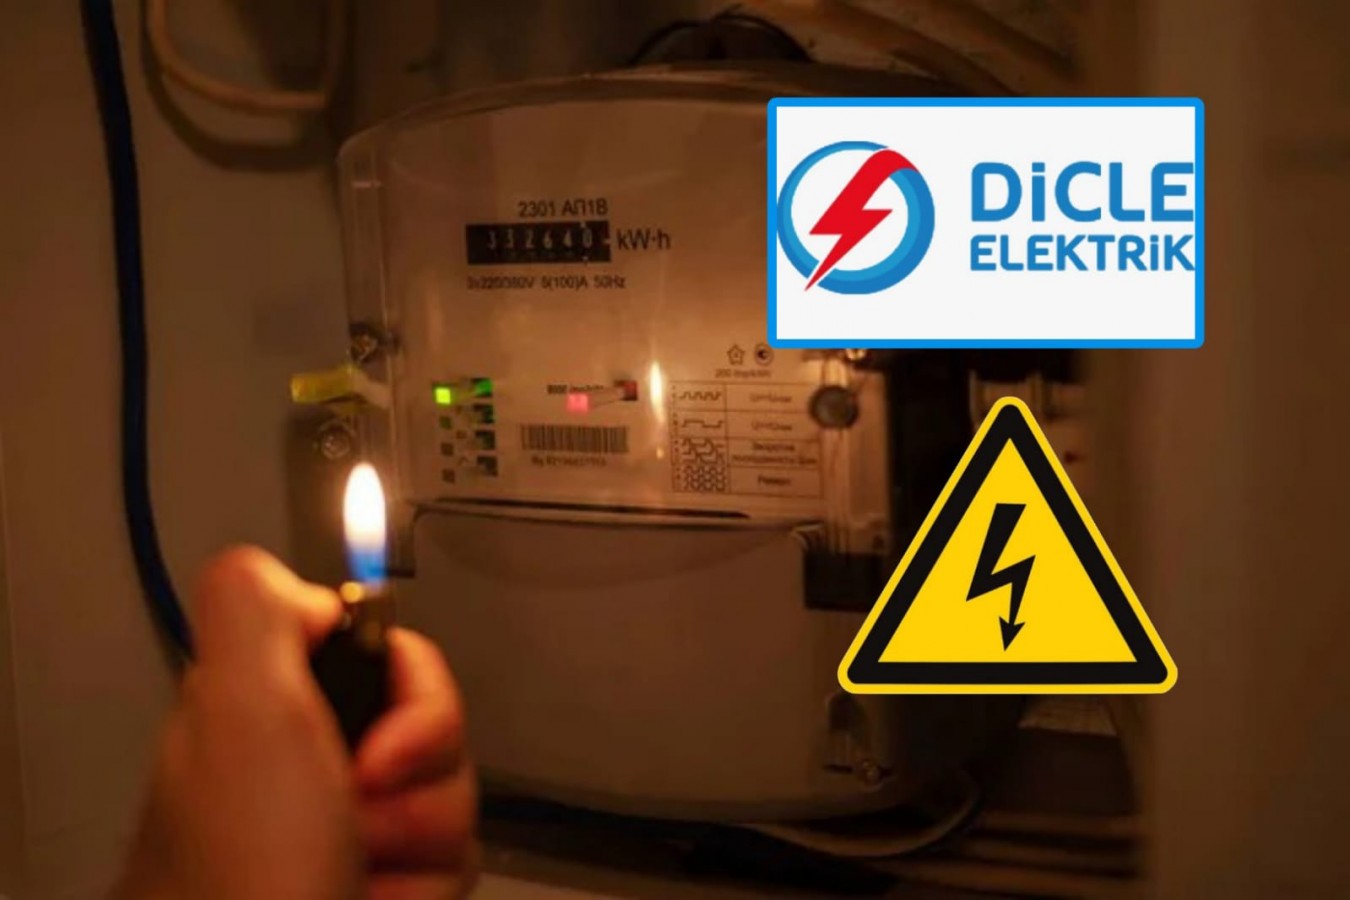 DEDAŞ'ın bildirimsiz 2,5 saat elektrik kesintisi vatandaşı mağdur etti